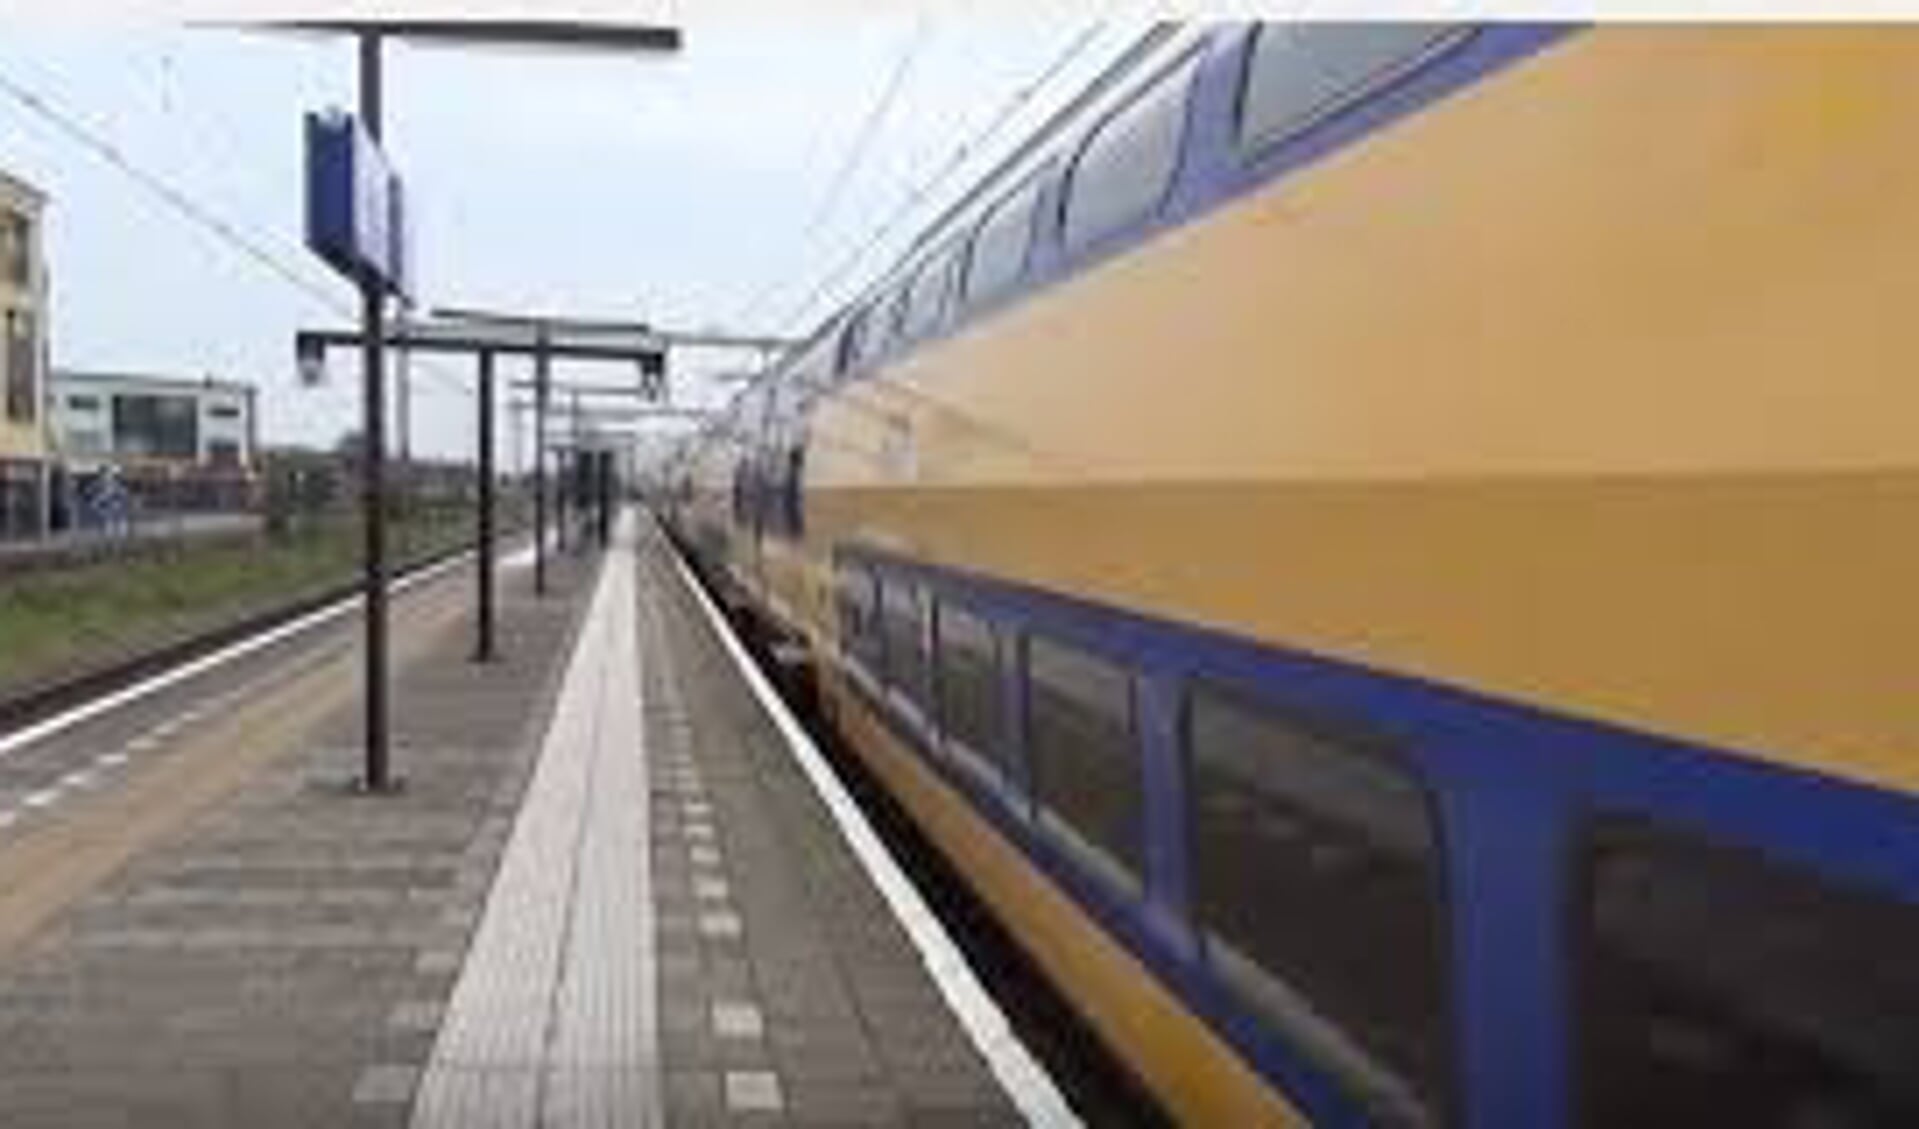 Treinstation Heerhugowaard. Voor de ondertunneling van de Zuidtangent wil de gemeente Dijk en Waard een beroep doen op een subsidiepot van de EU.